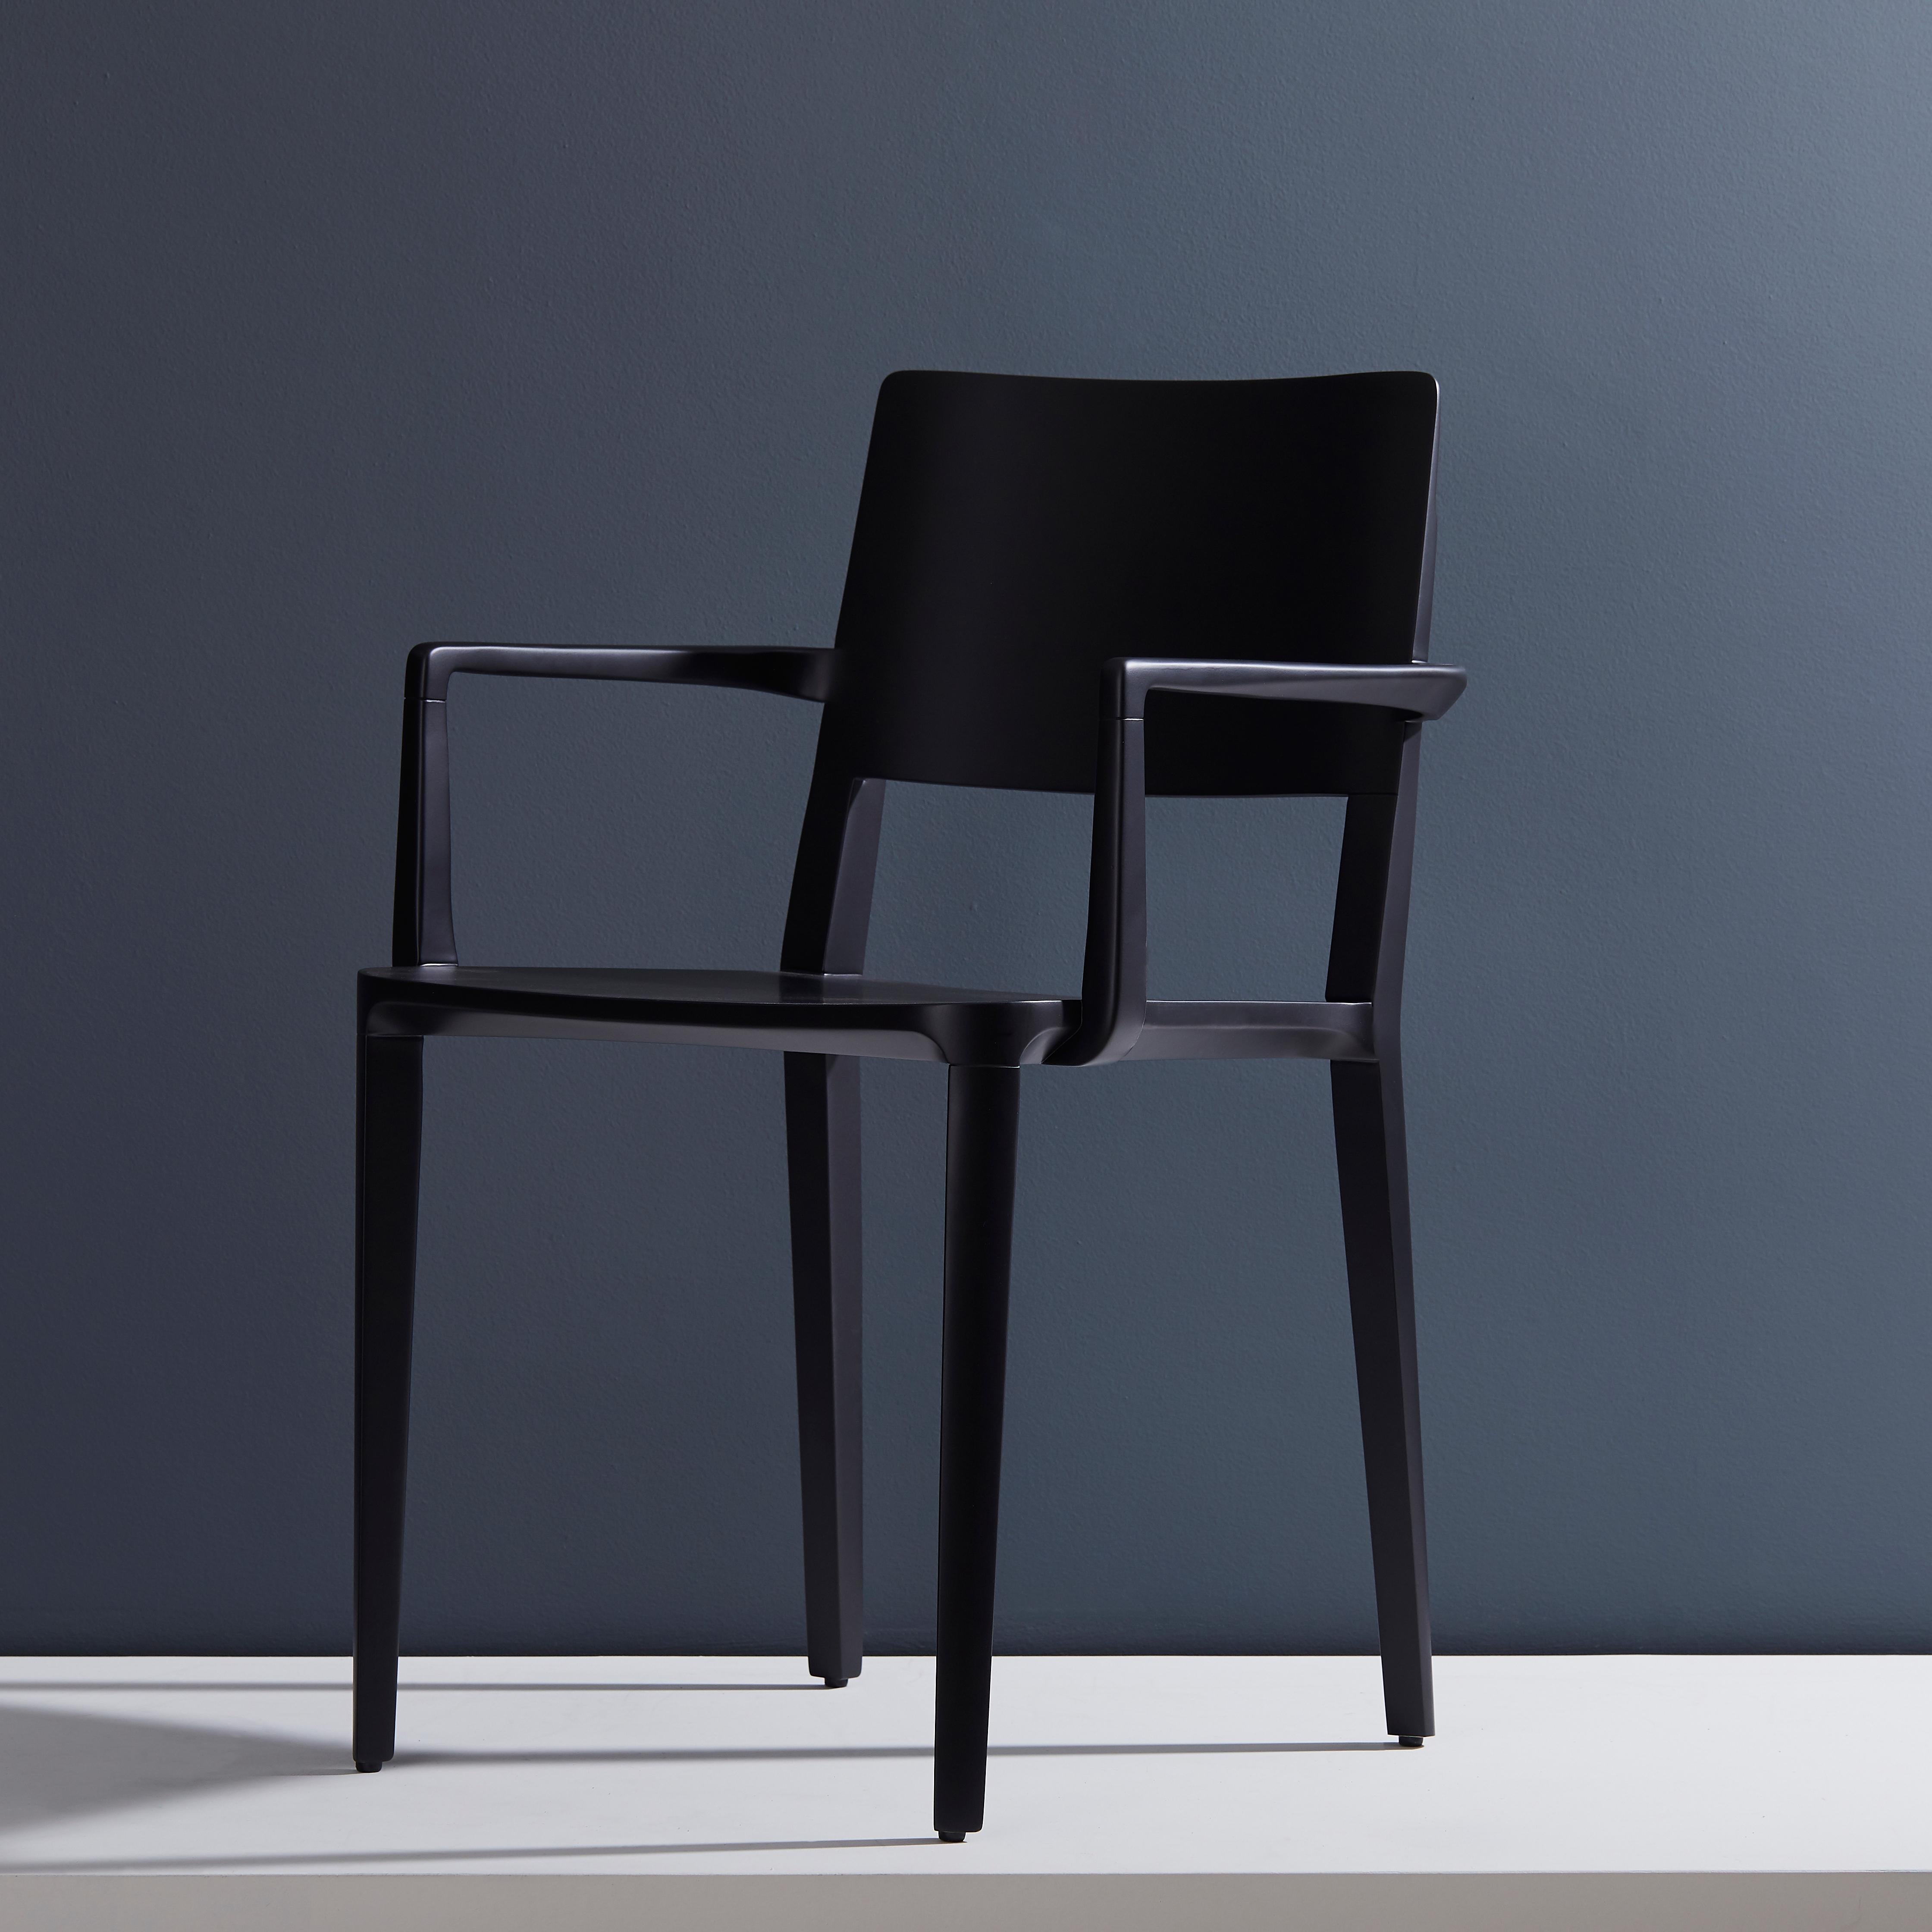 Collection Evo Chair.

Notre collection Evo est basée sur la fusion harmonique entre les formes géométriques et l'interprétation moderne des archétypes du bois. 

Tous les éléments qui composent la chaise sont conçus avec précision pour